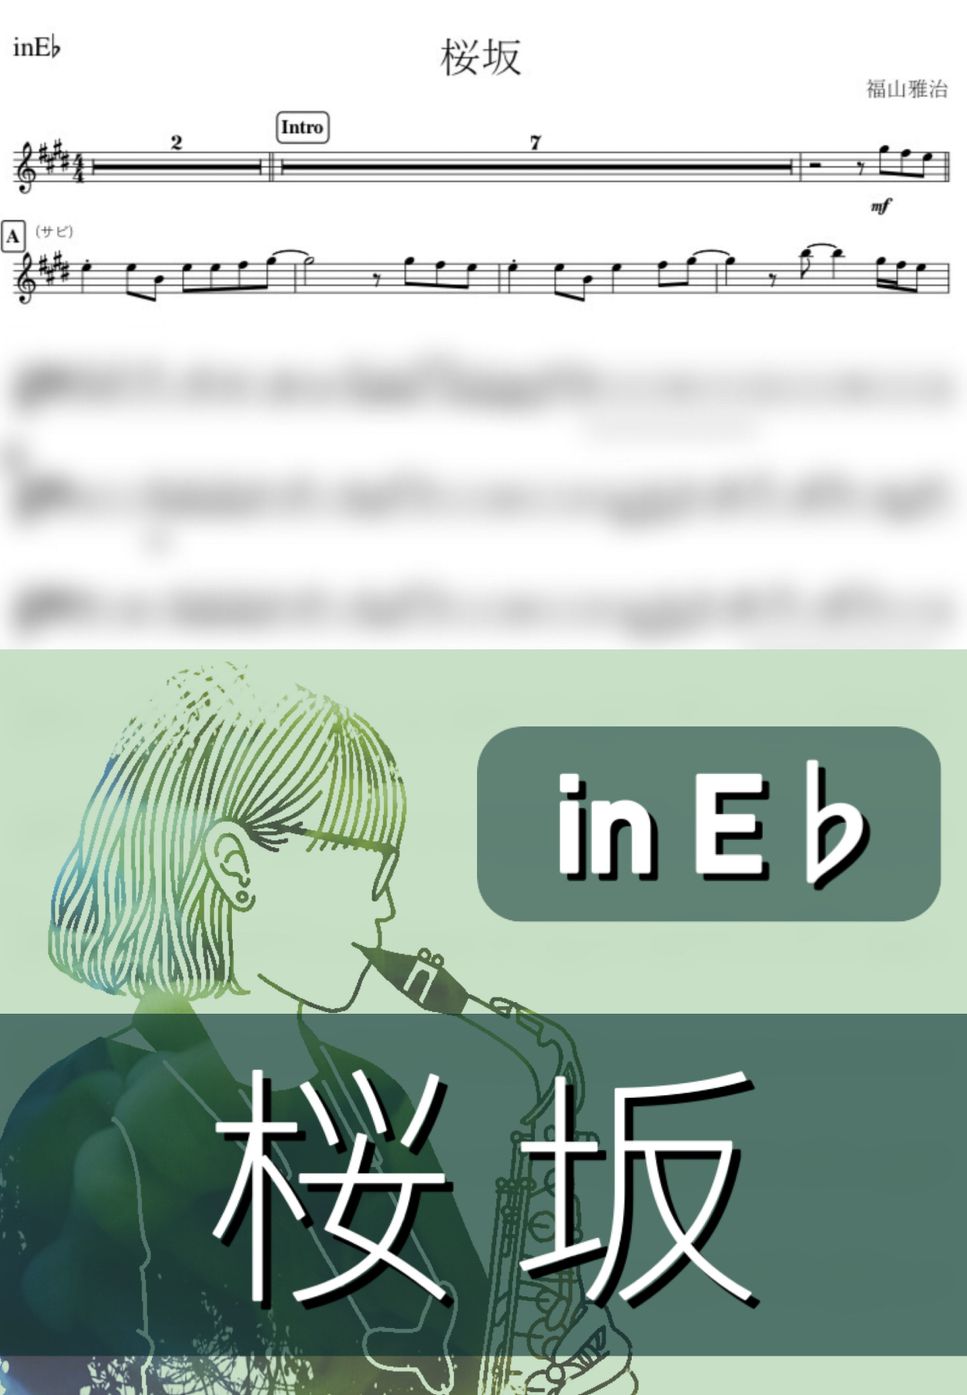 福山雅治 - 桜坂 (E♭) by kanamusic